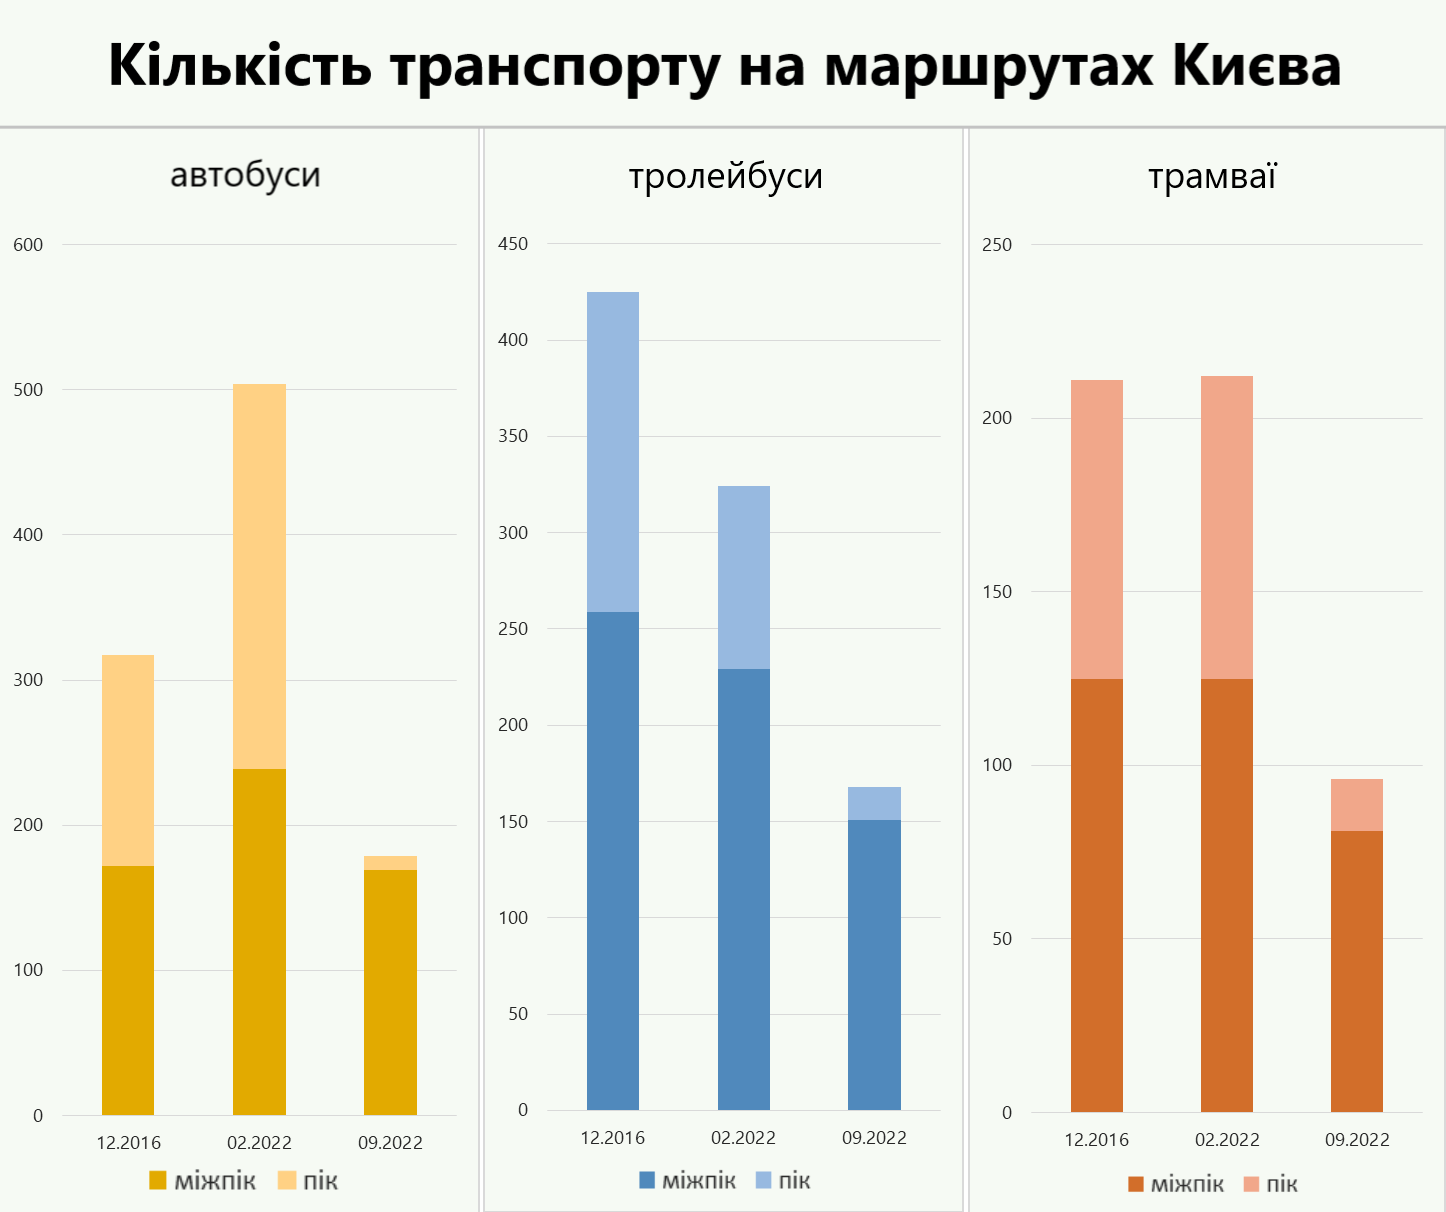 Кількість транспорту на маршрутах Києва — результати дослідження